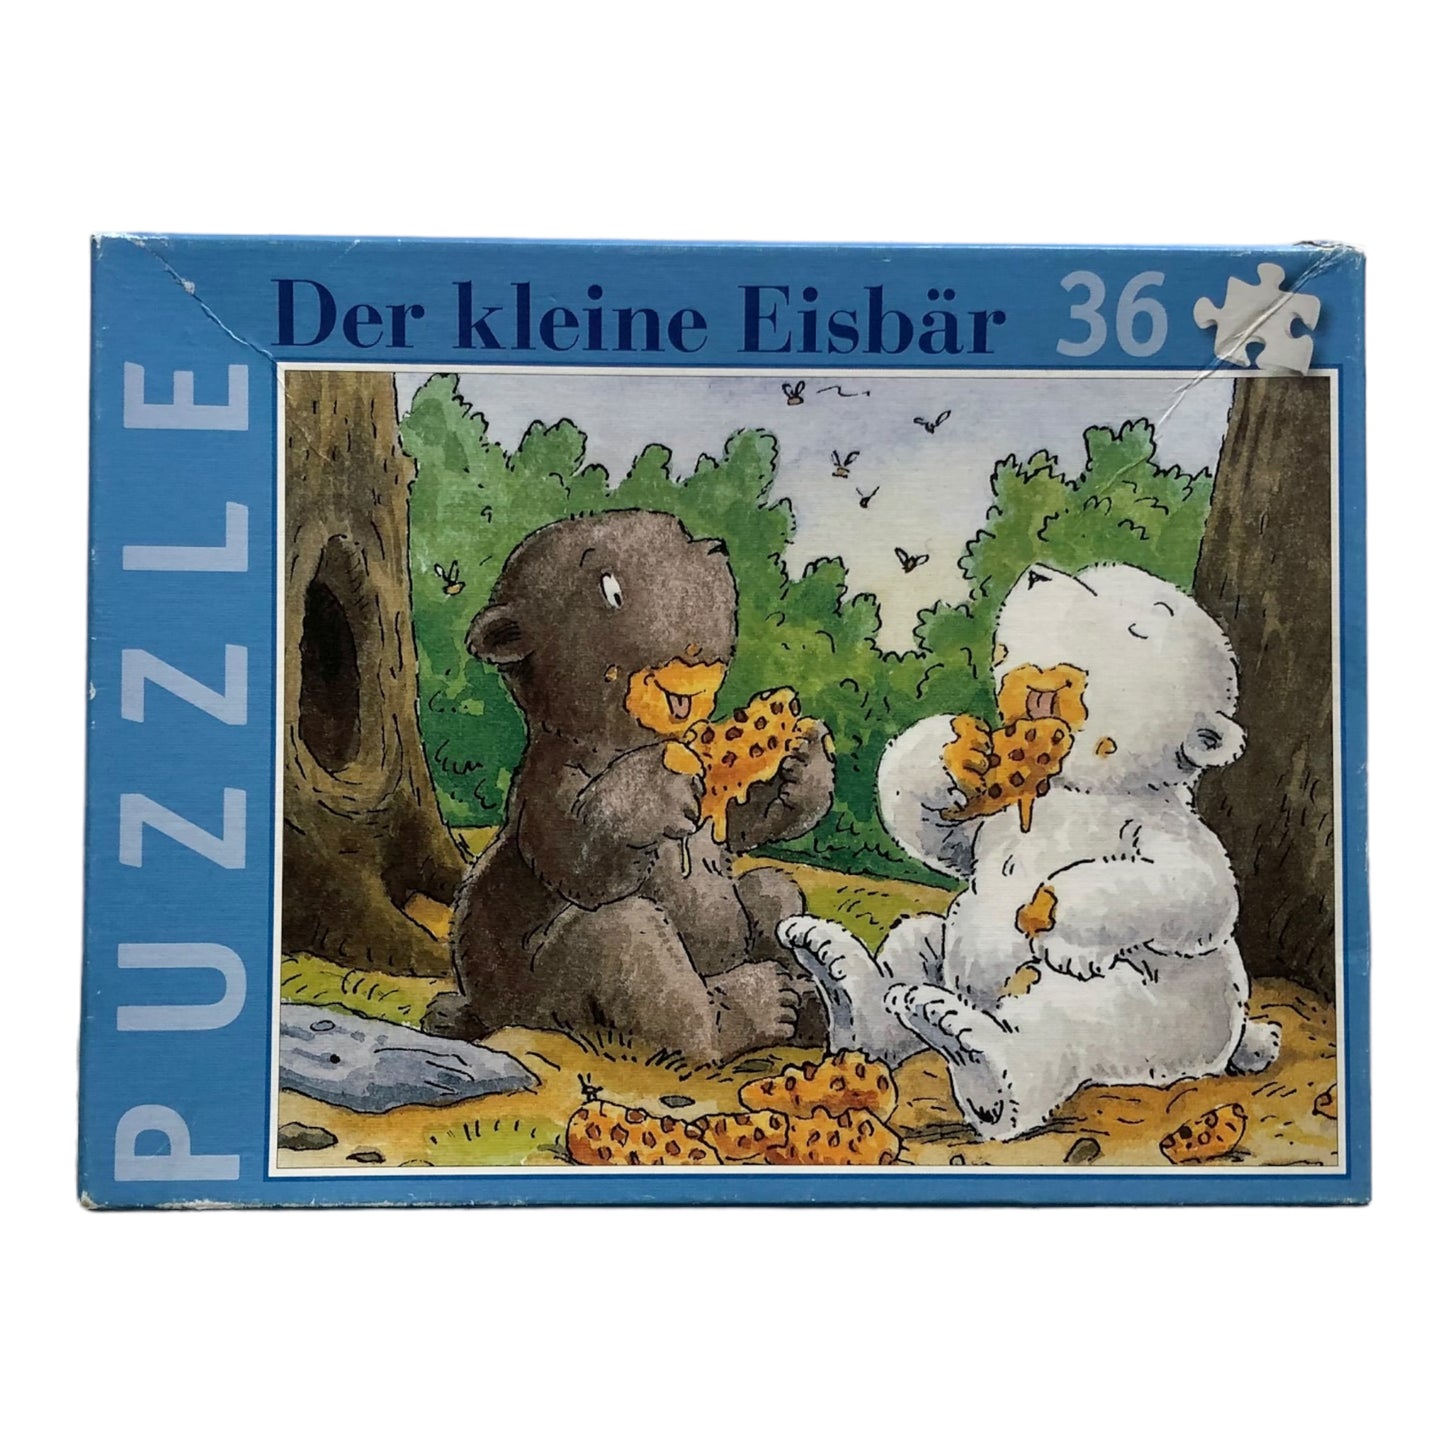 Der kleine Eisbär Puzzle - 36 pieces